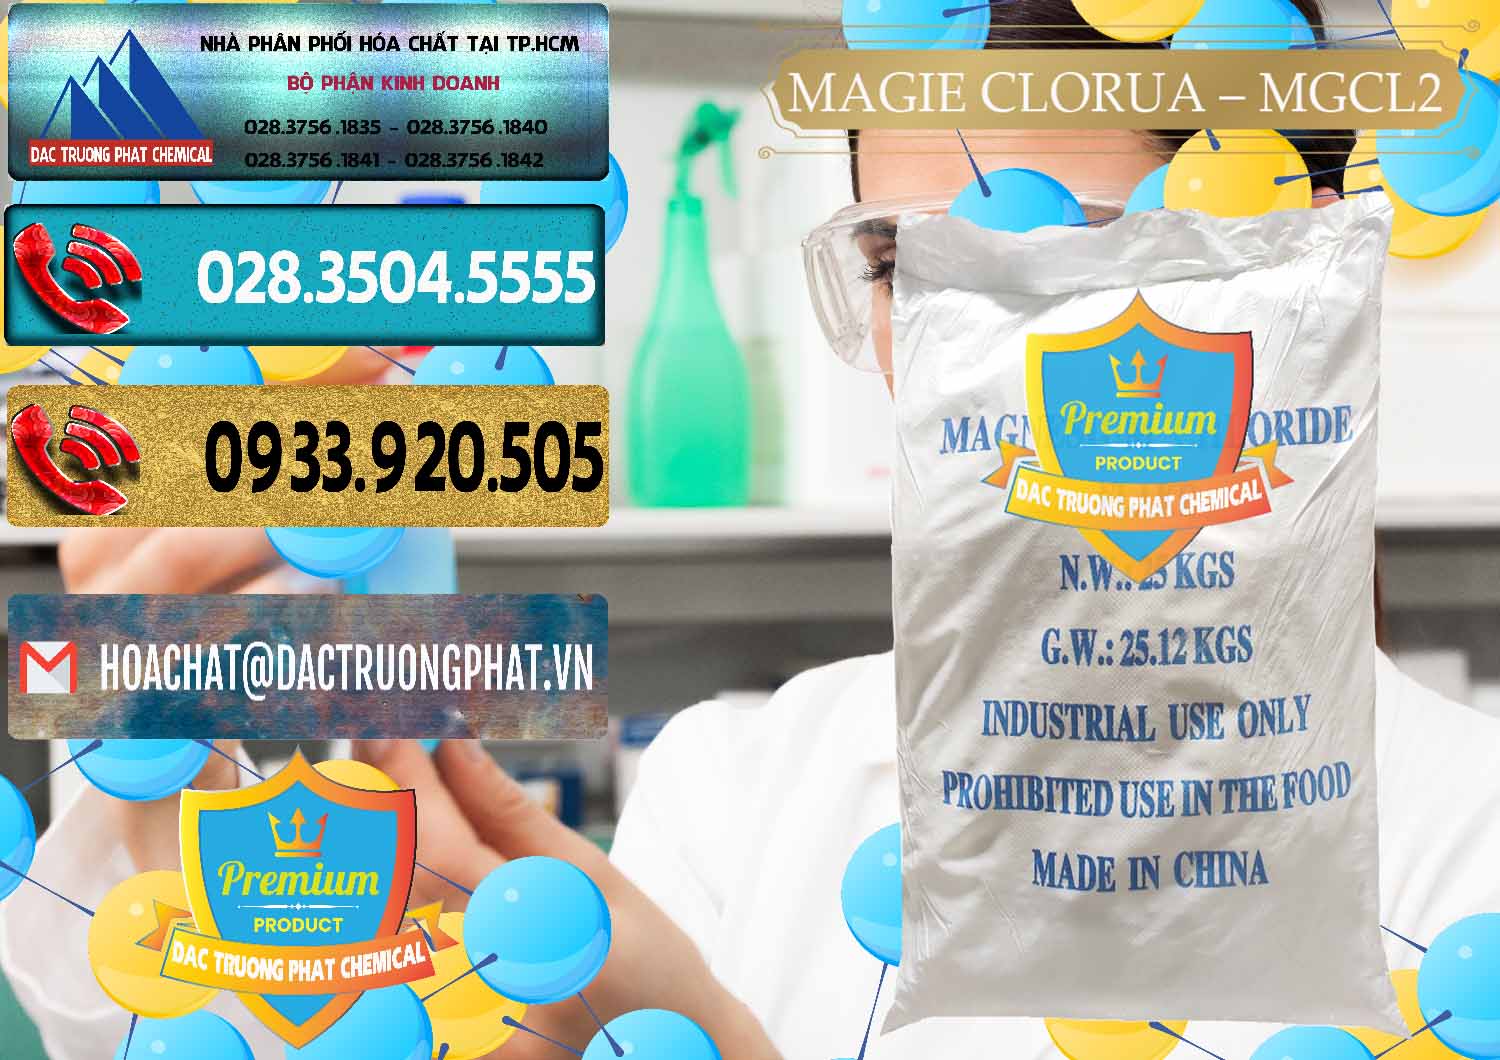 Cty chuyên nhập khẩu - bán Magie Clorua – MGCL2 96% Dạng Vảy Trung Quốc China - 0091 - Chuyên cung cấp _ bán hóa chất tại TP.HCM - hoachatdetnhuom.com